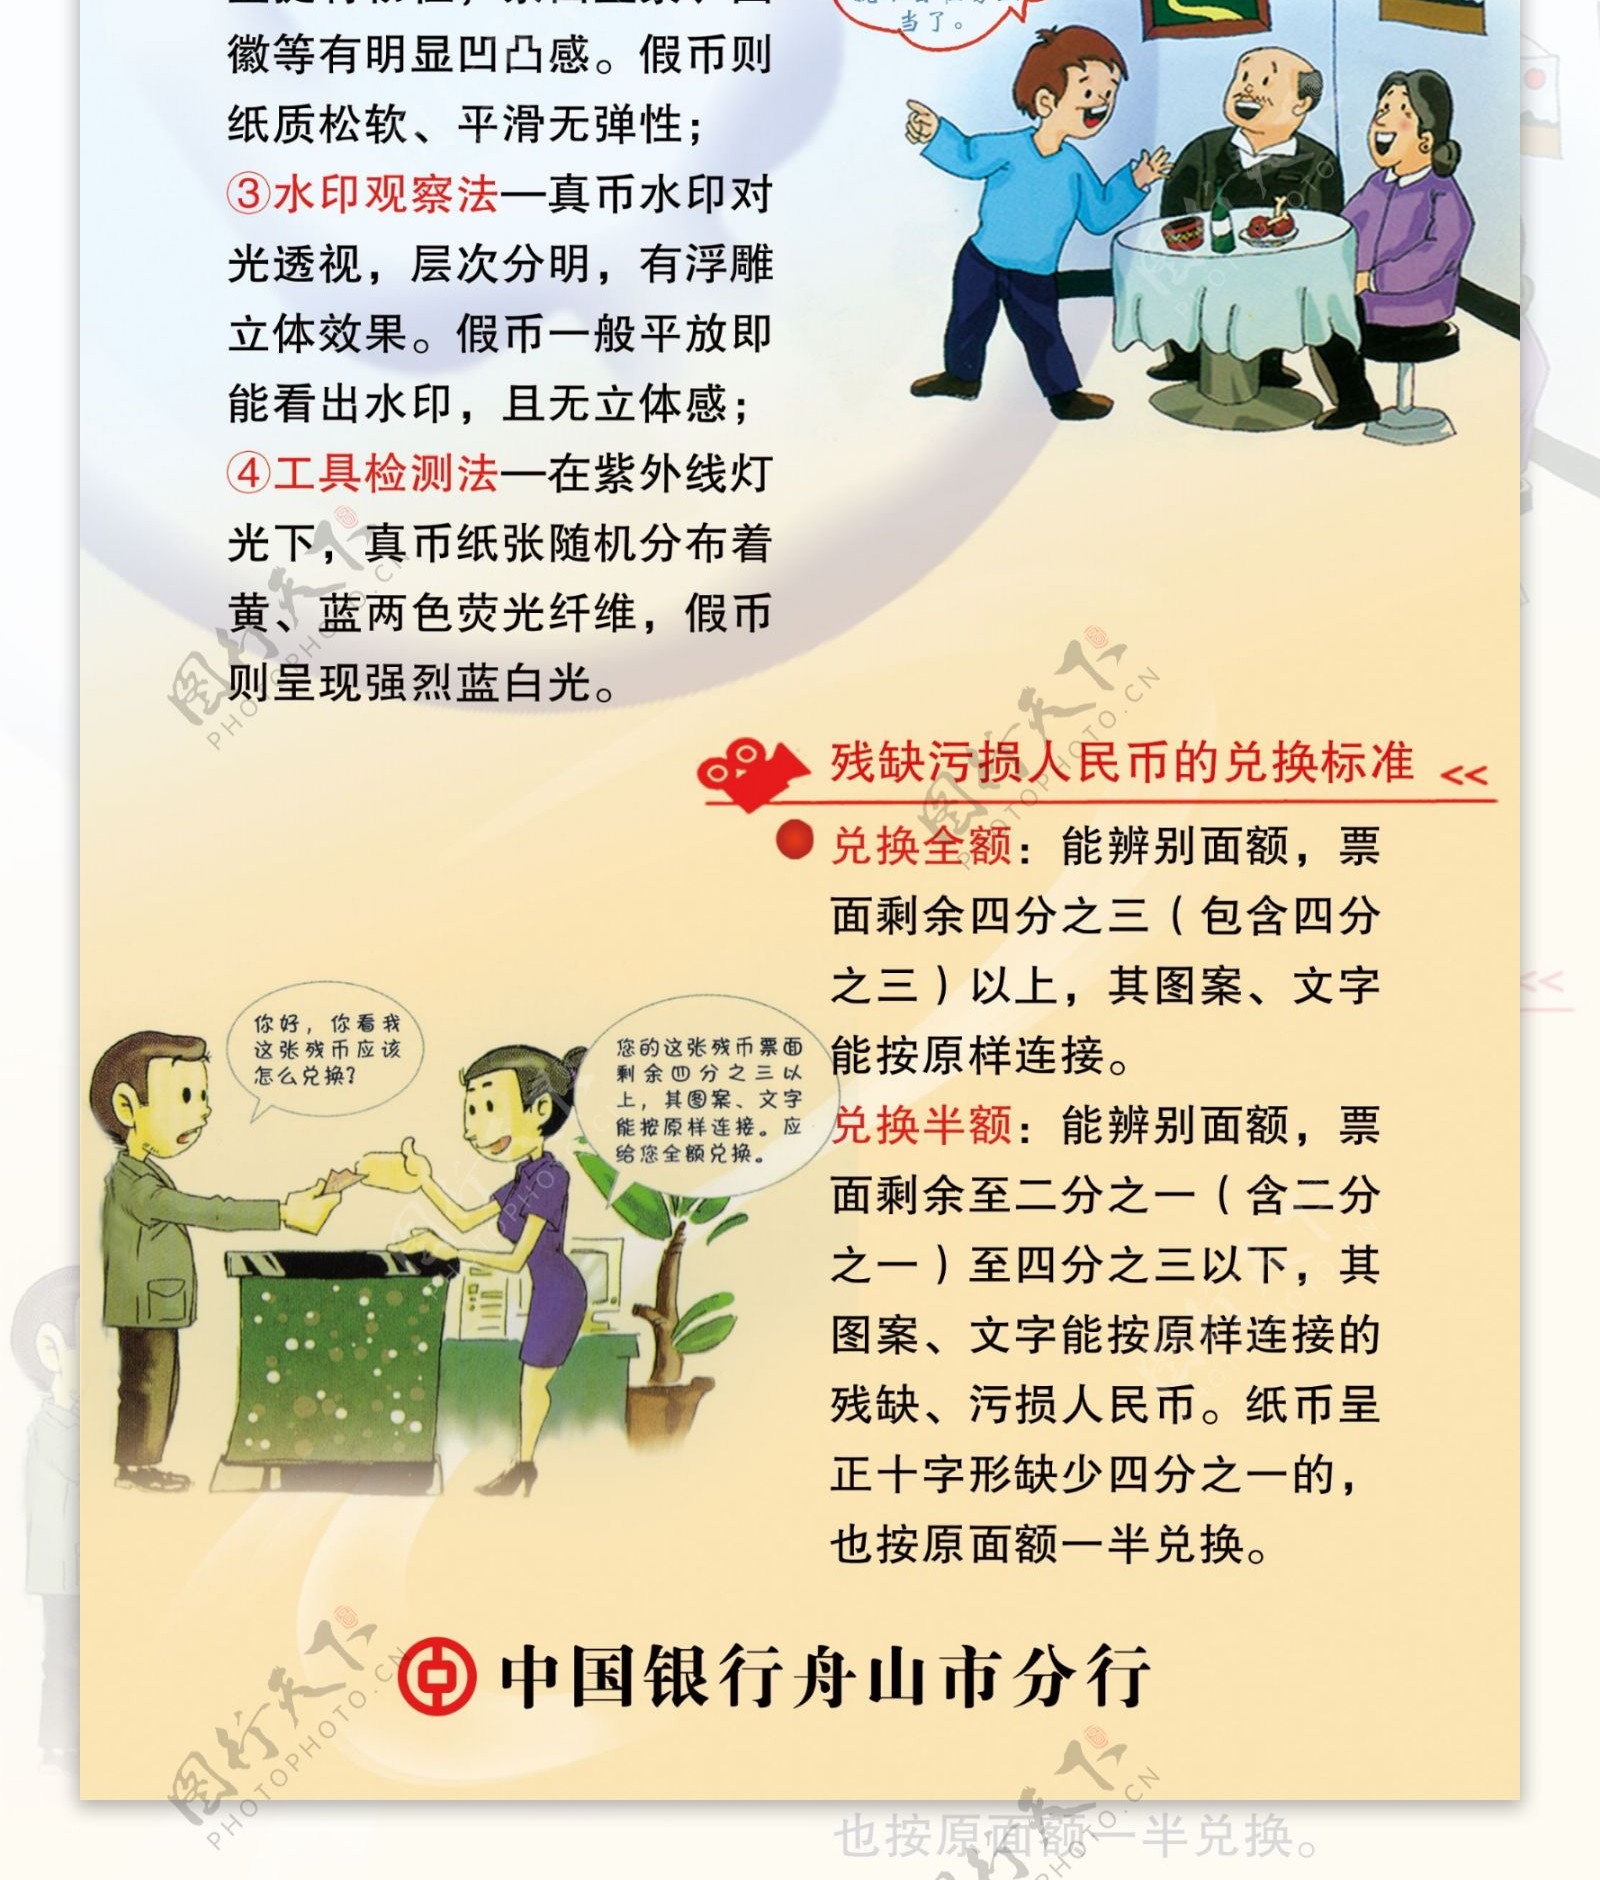 中国银行易拉宝反假币宣传栏图片